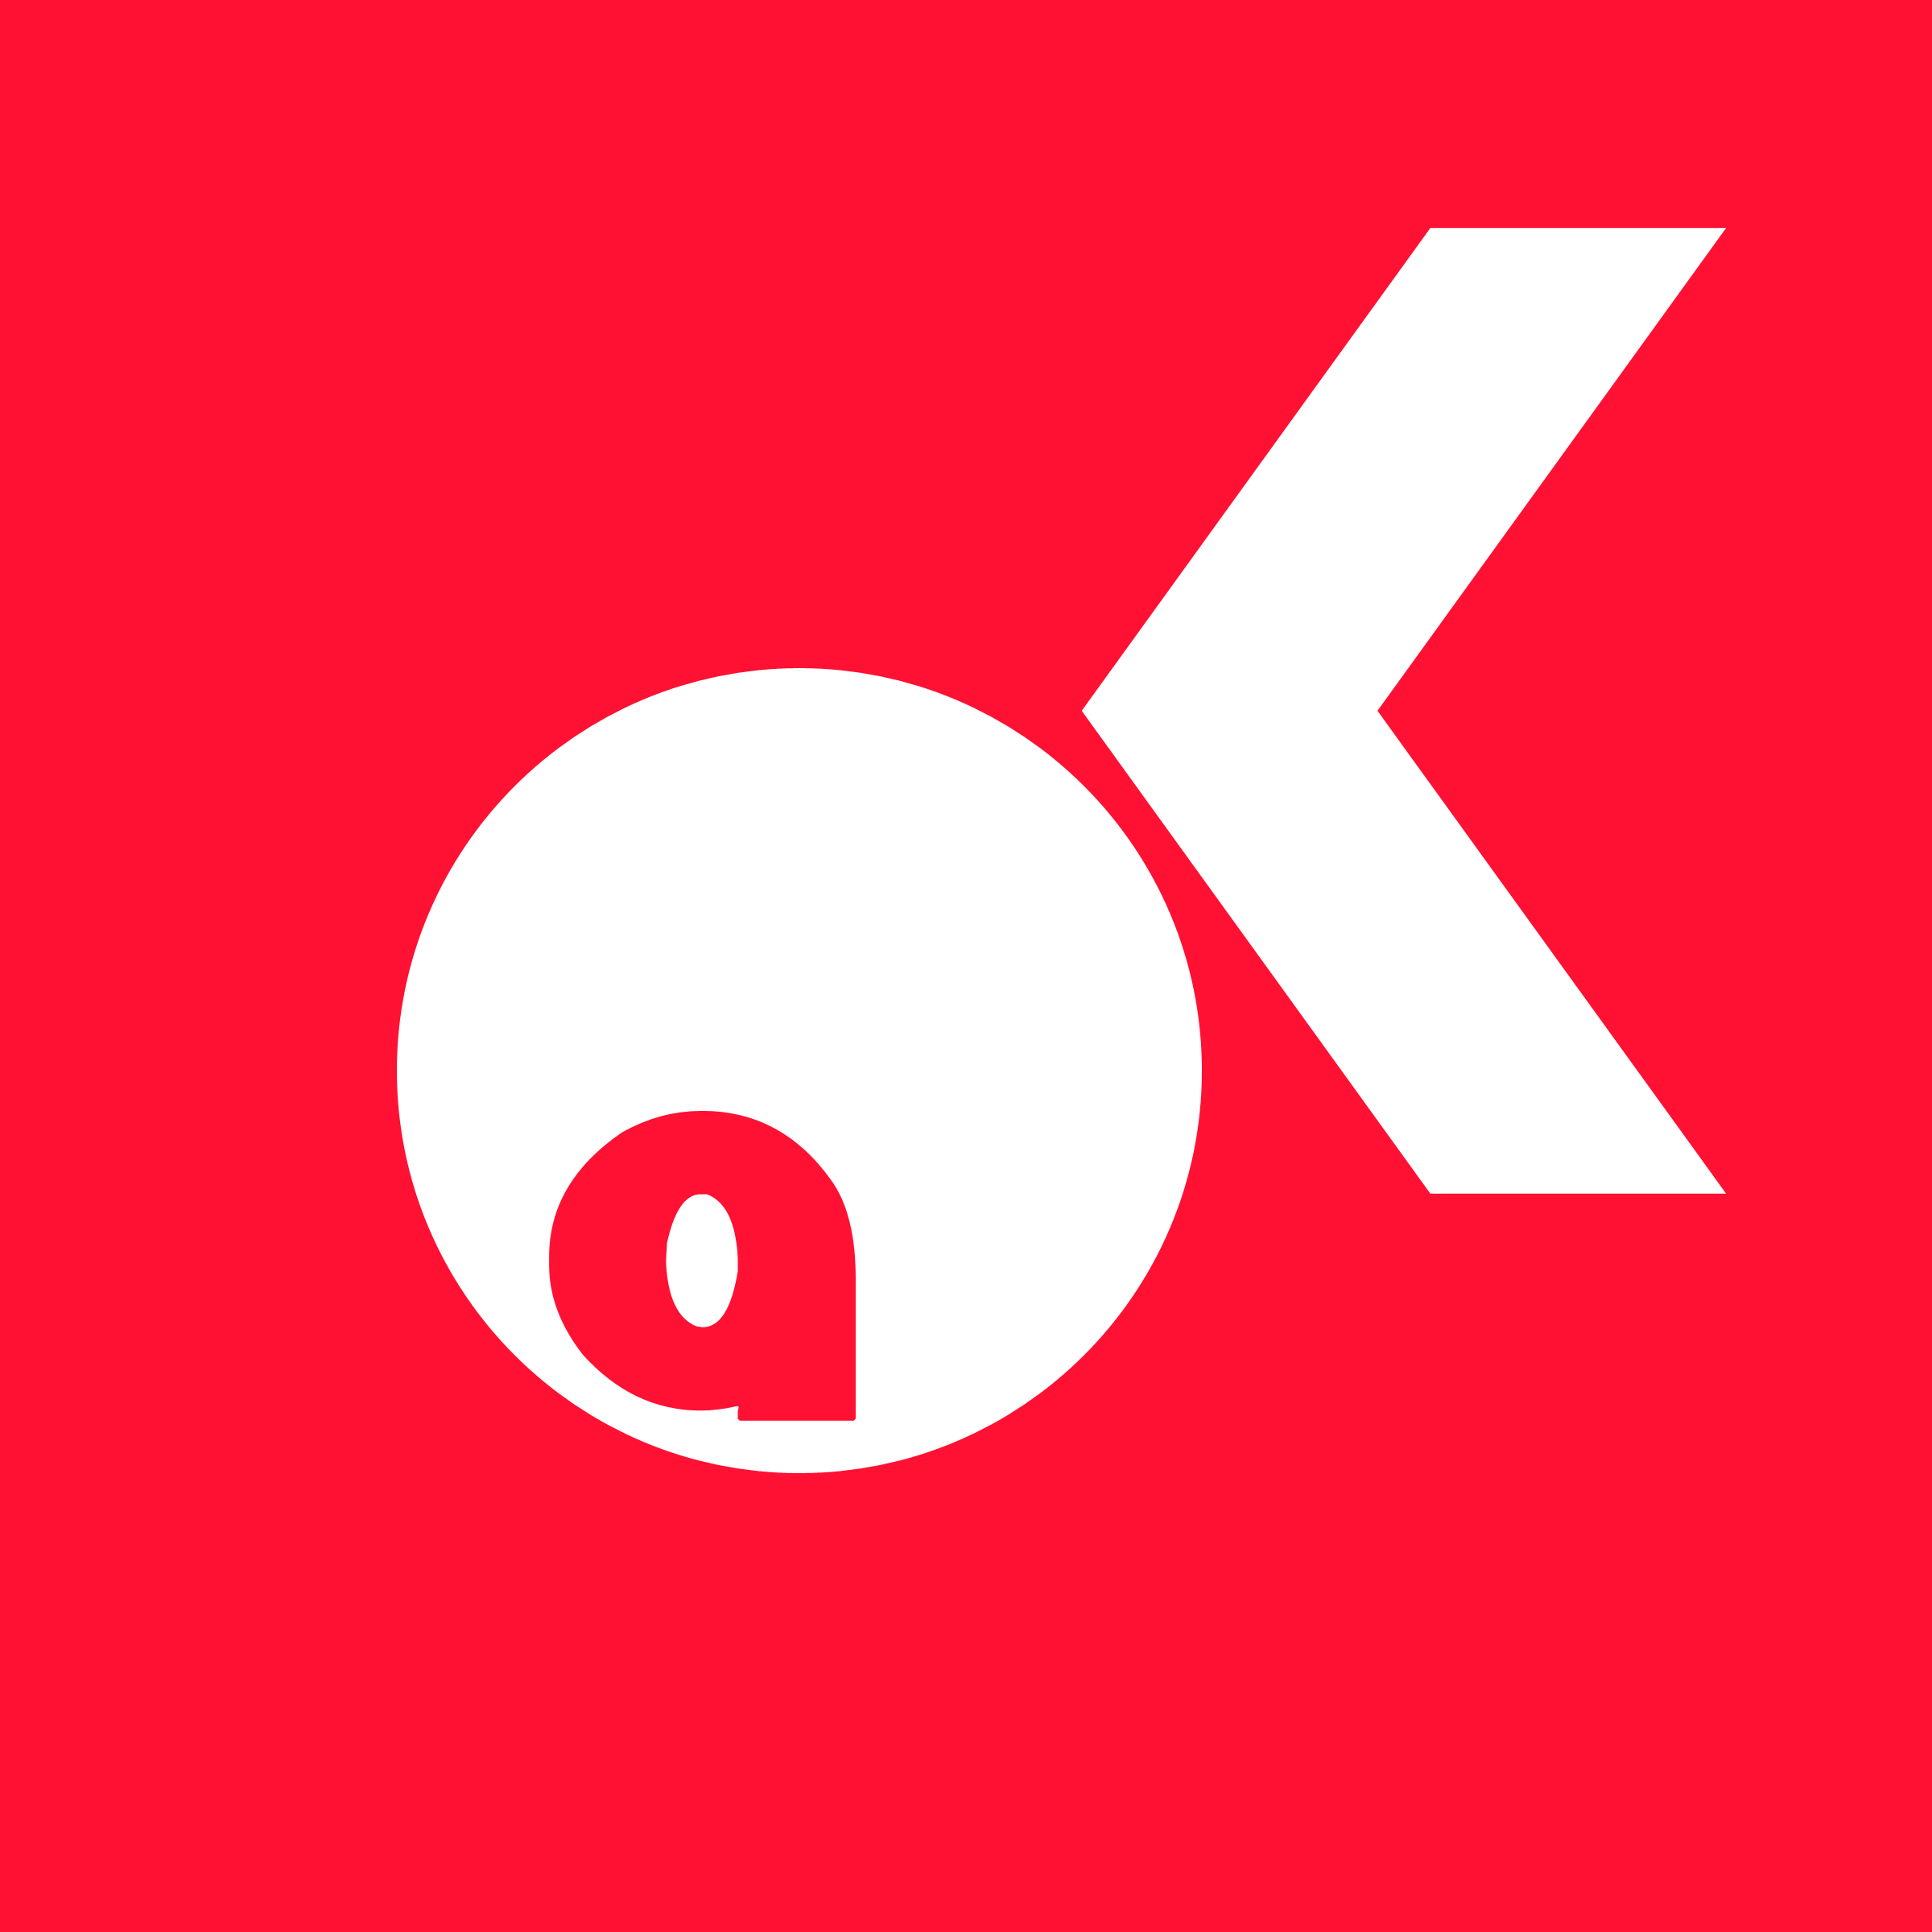 AOK-Logo - Logo Aok PNG